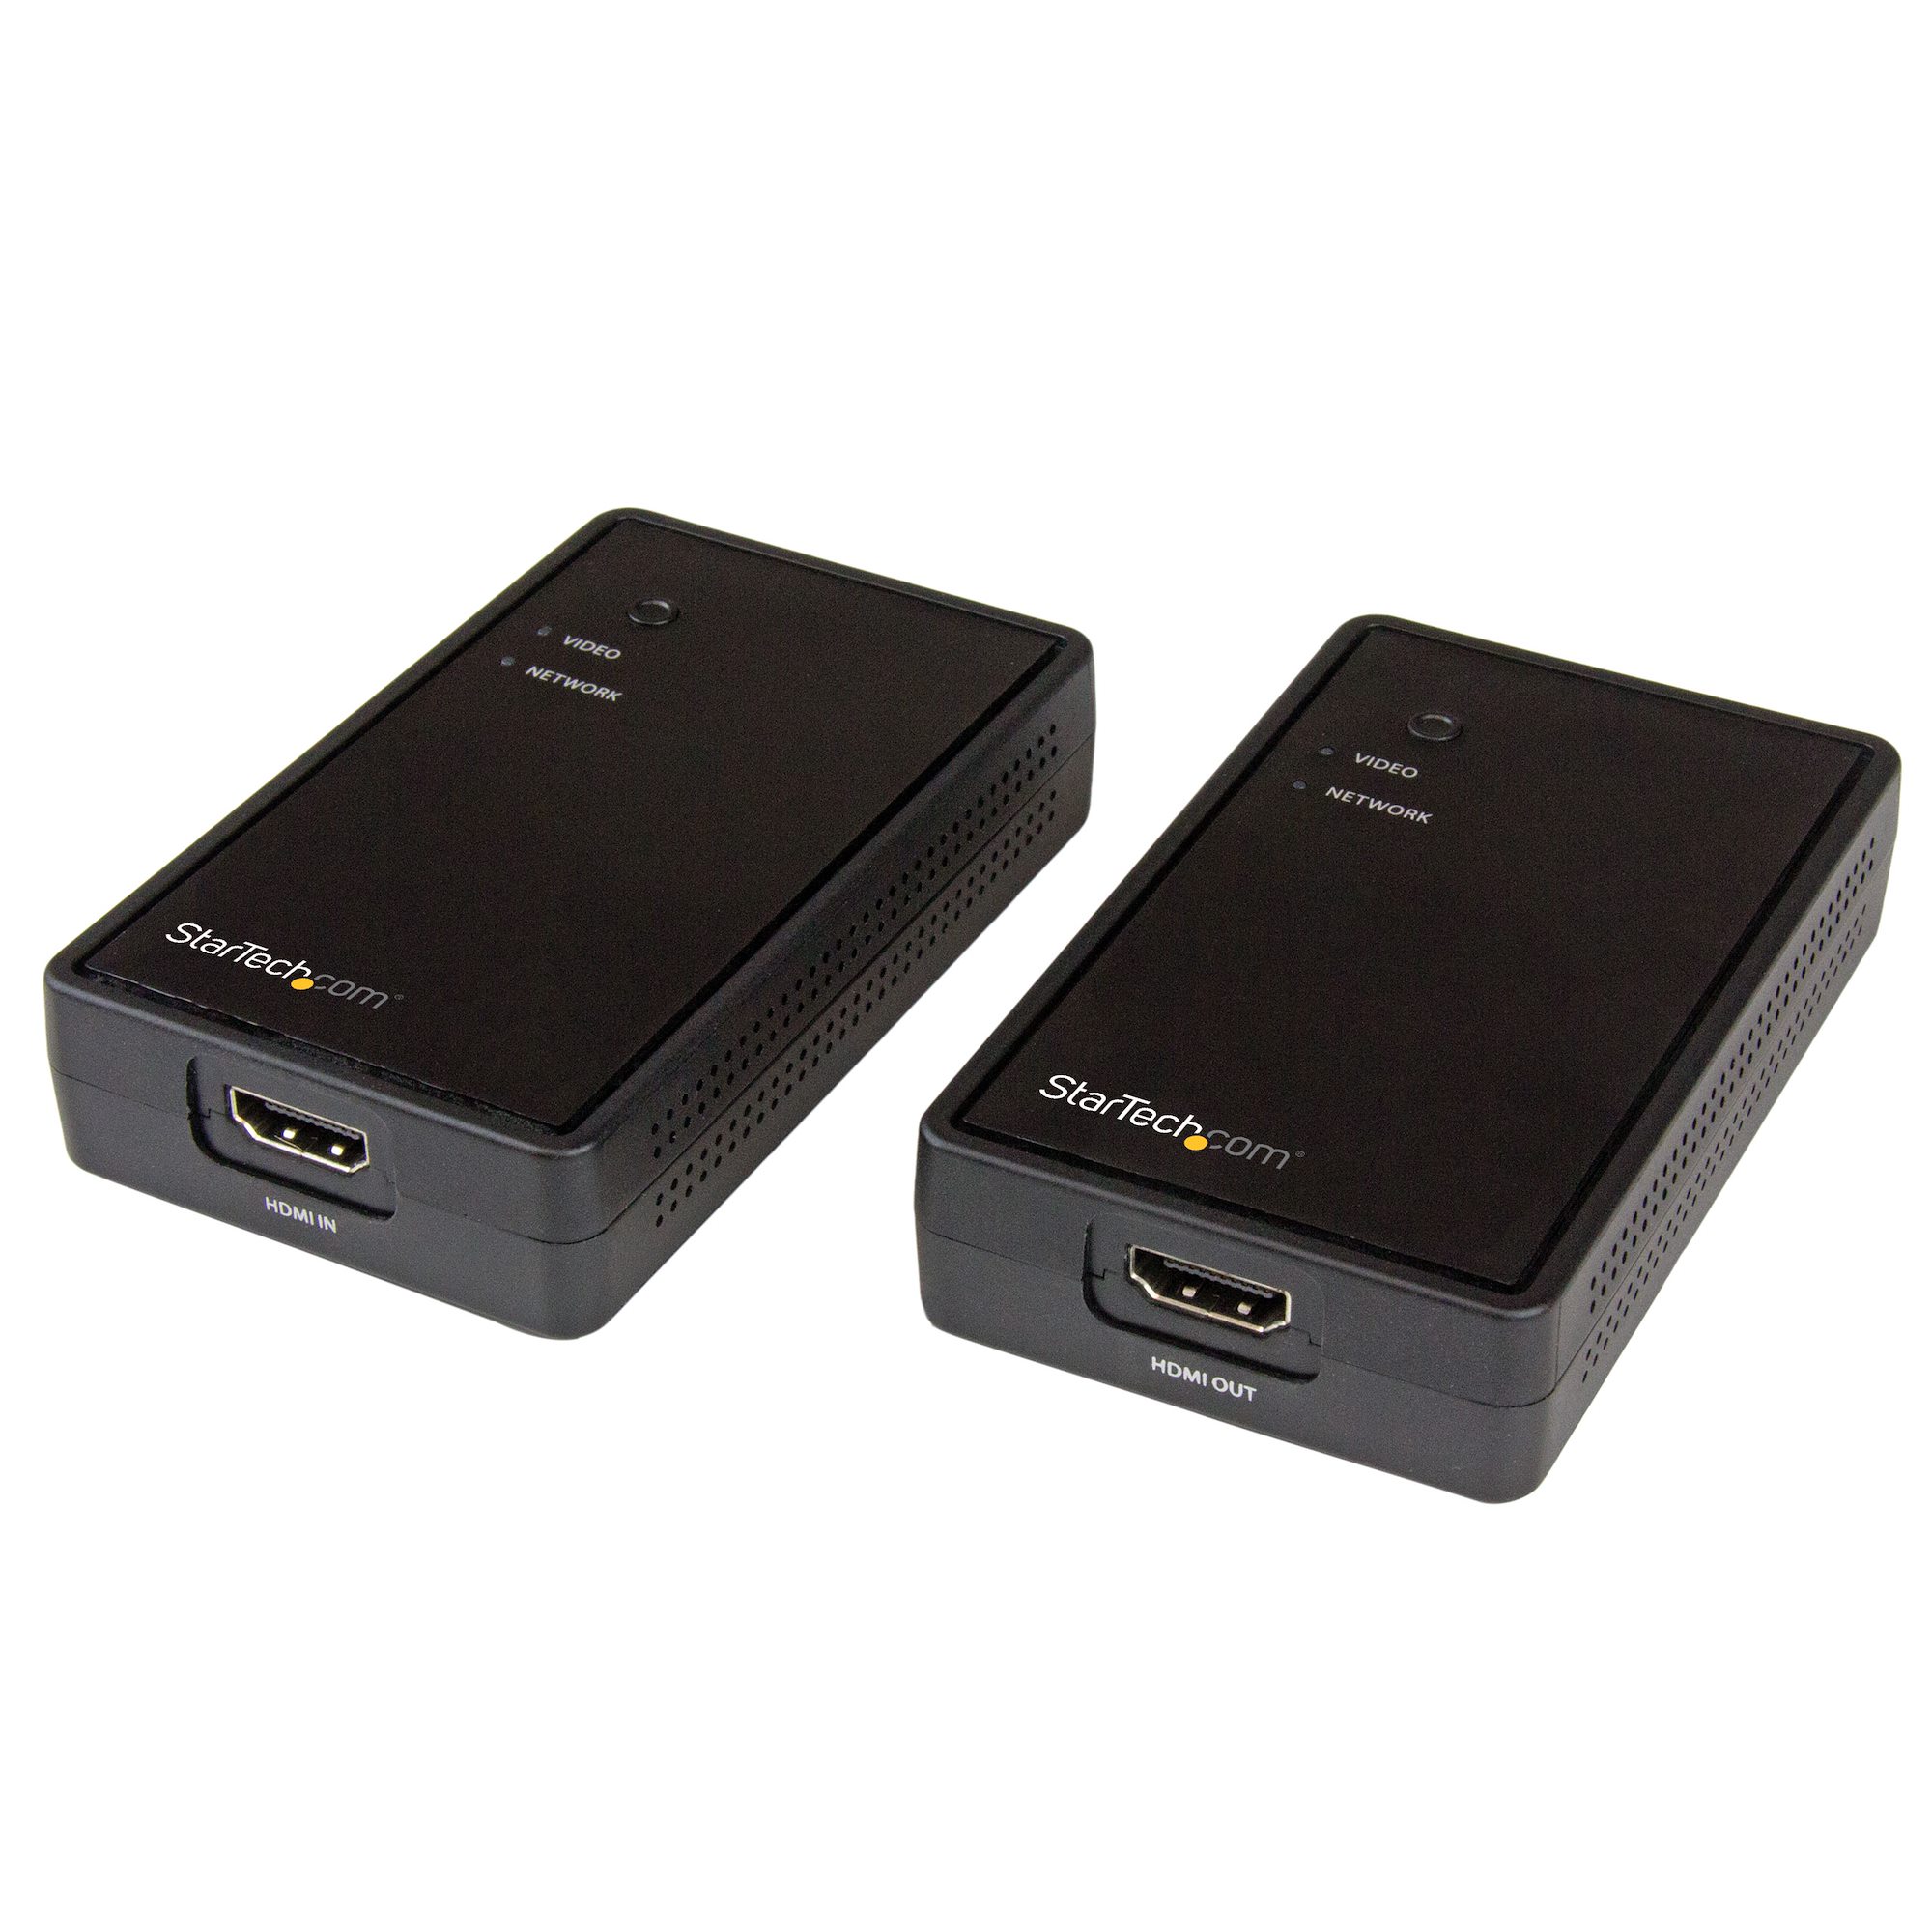 Extendeur Wifi HDMI sans fil HD 1080P@50/60hz - Émetteur et Récepteur - Wifi  5Ghz 